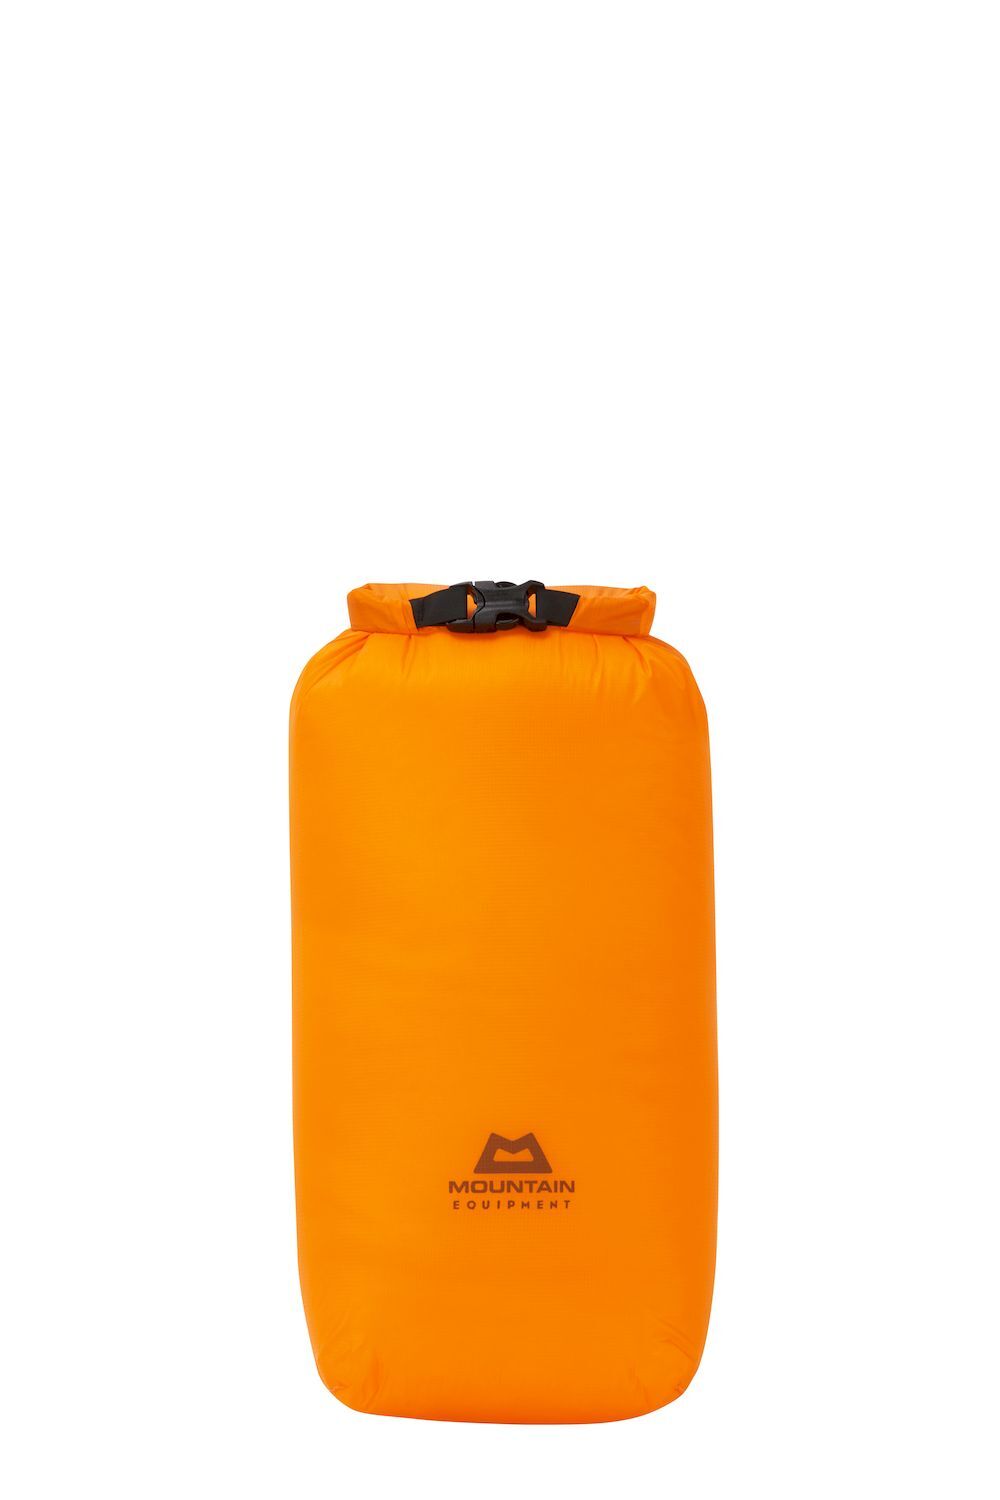 Mountain Equipment Lightweight Drybag 5L - Vattentät väska